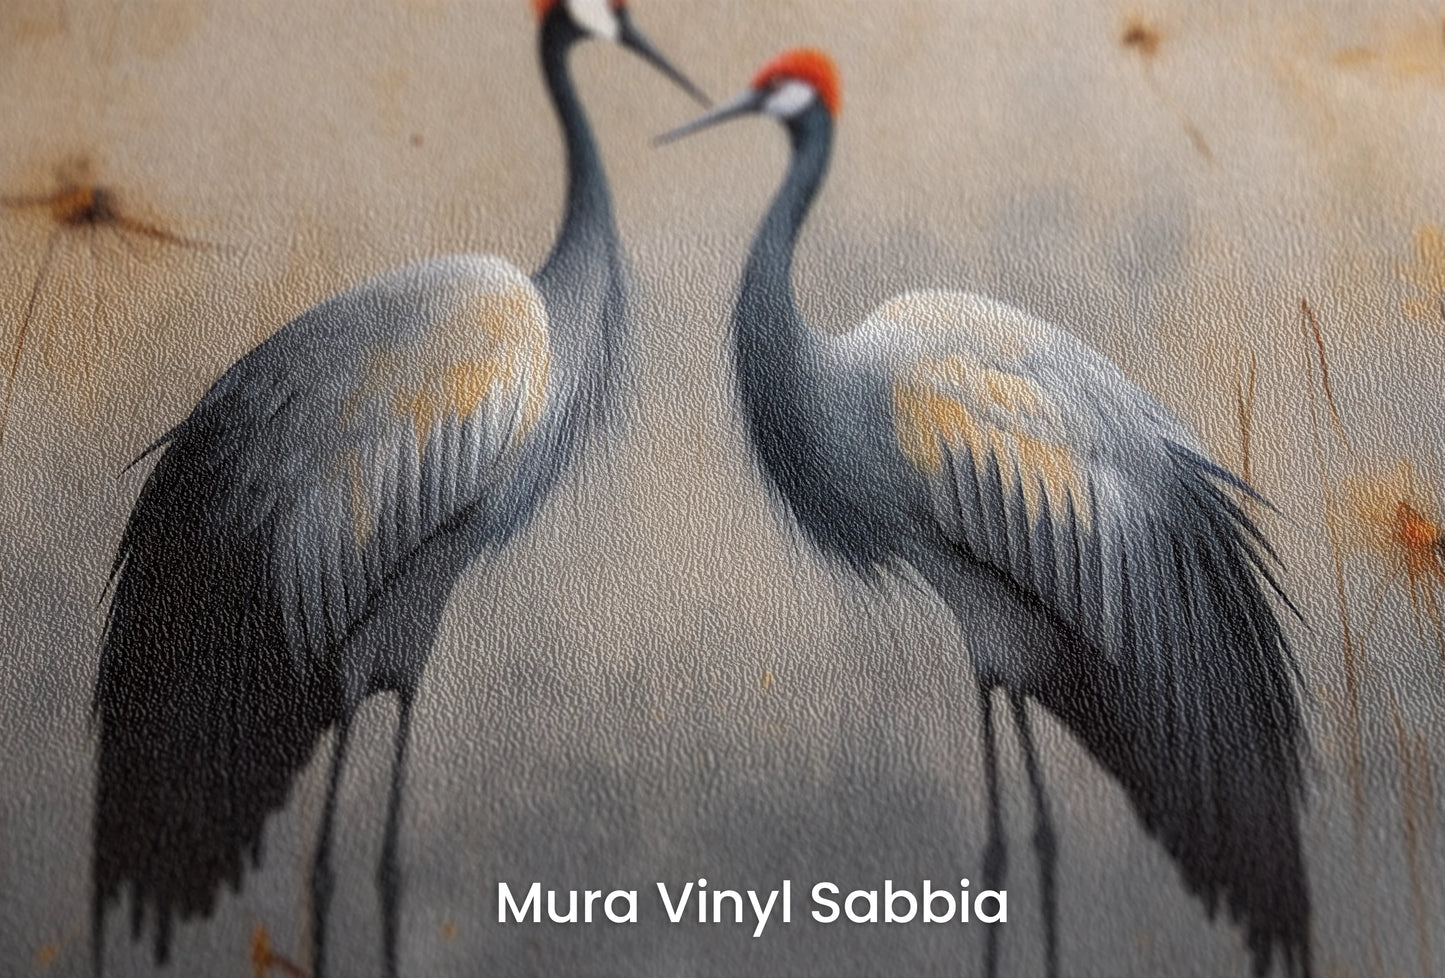 Zbliżenie na artystyczną fototapetę o nazwie Dusk's Whisper na podłożu Mura Vinyl Sabbia struktura grubego ziarna piasku.